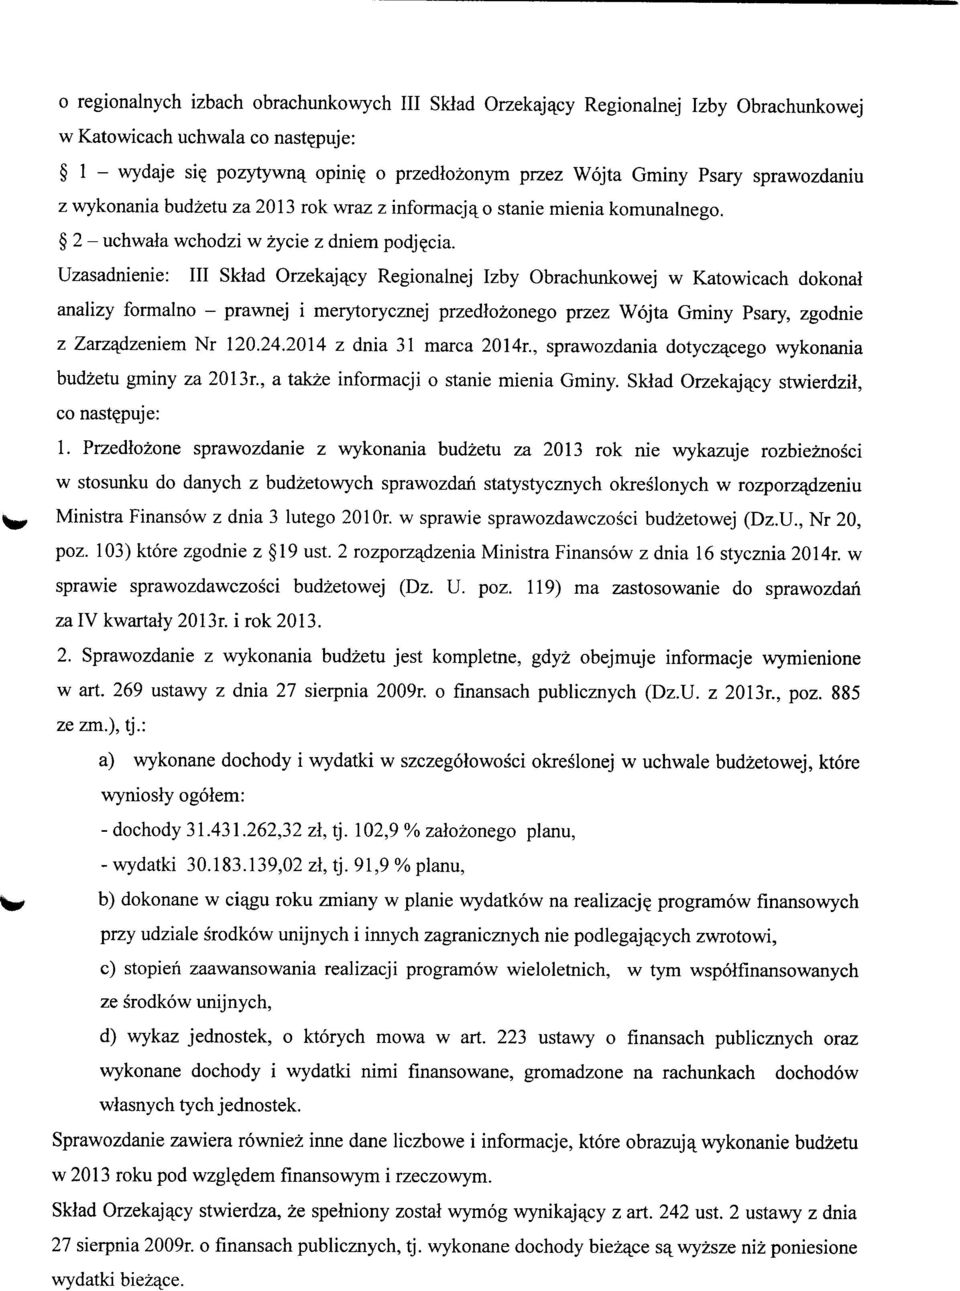 Uzasadnienie: III Sklad Orzekajacy Regionalnej Izby Obrachunkowej w Katowicach dokonal analizy formalno - prawnej i merytorycznej przedlozonego przez Wojta Gminy Psary, zgodnie z Zarzadzeniem Nr 120.